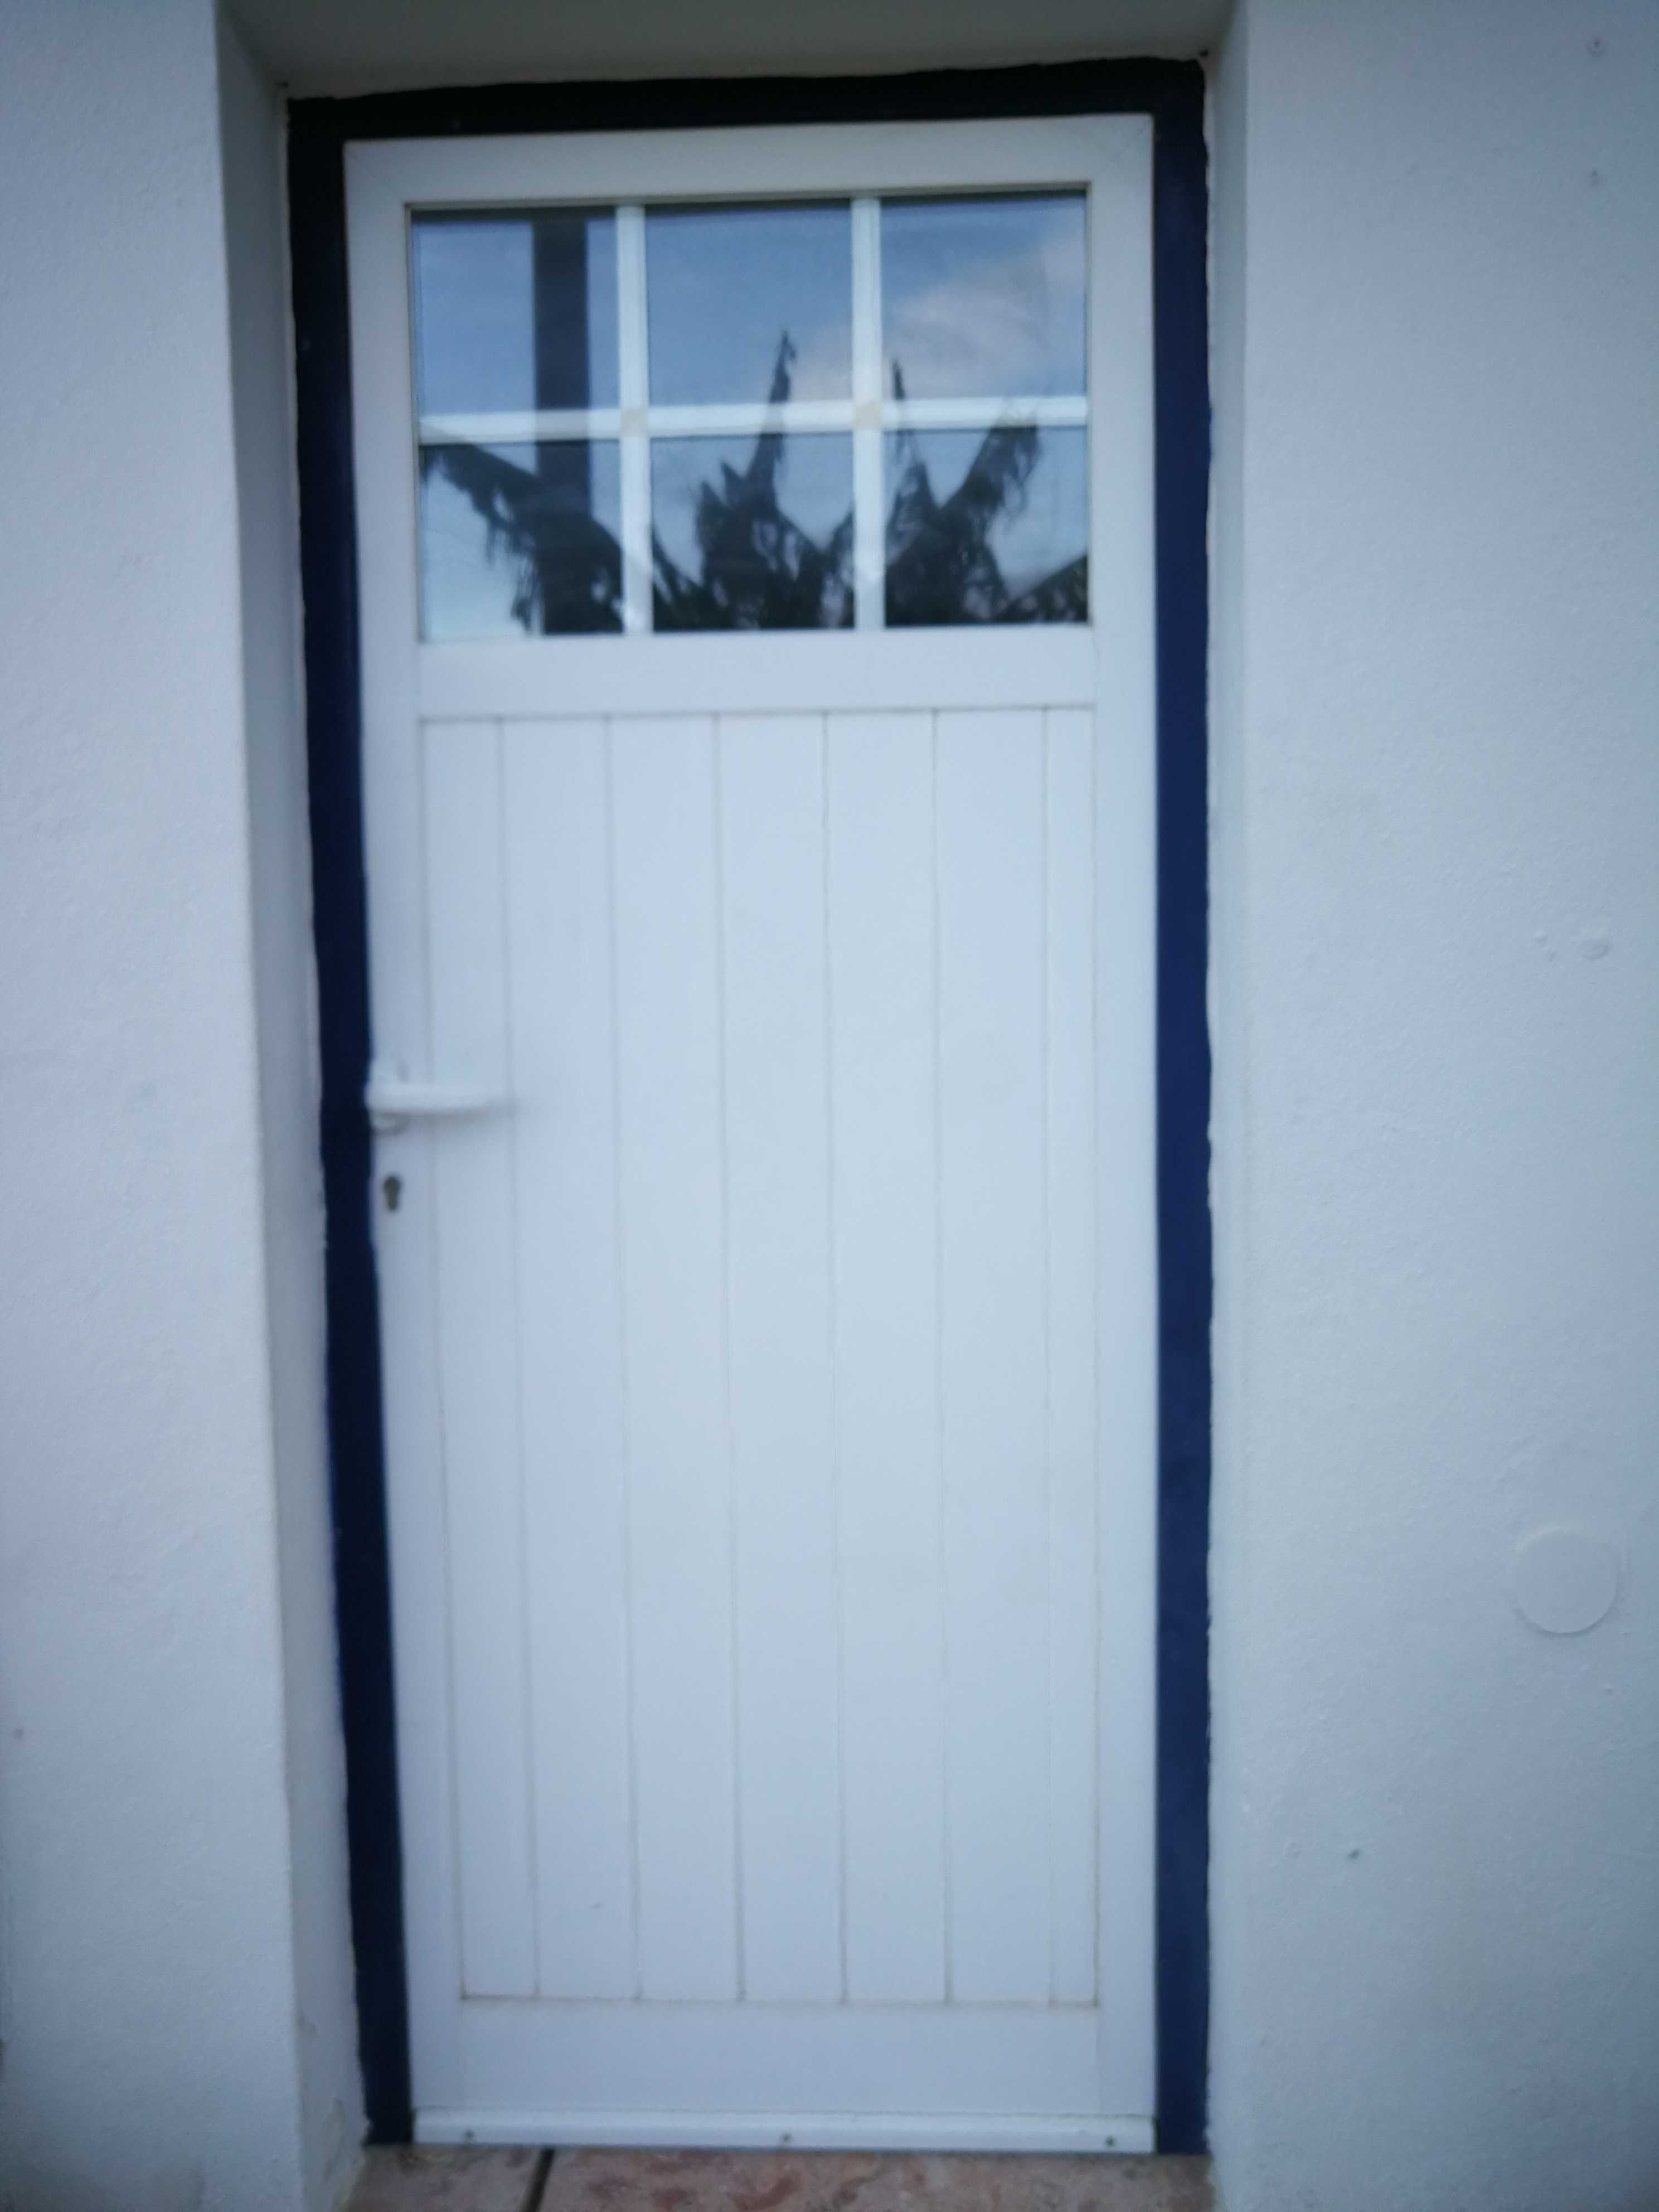 Vendo Janelas e porta provenientes de remodelação